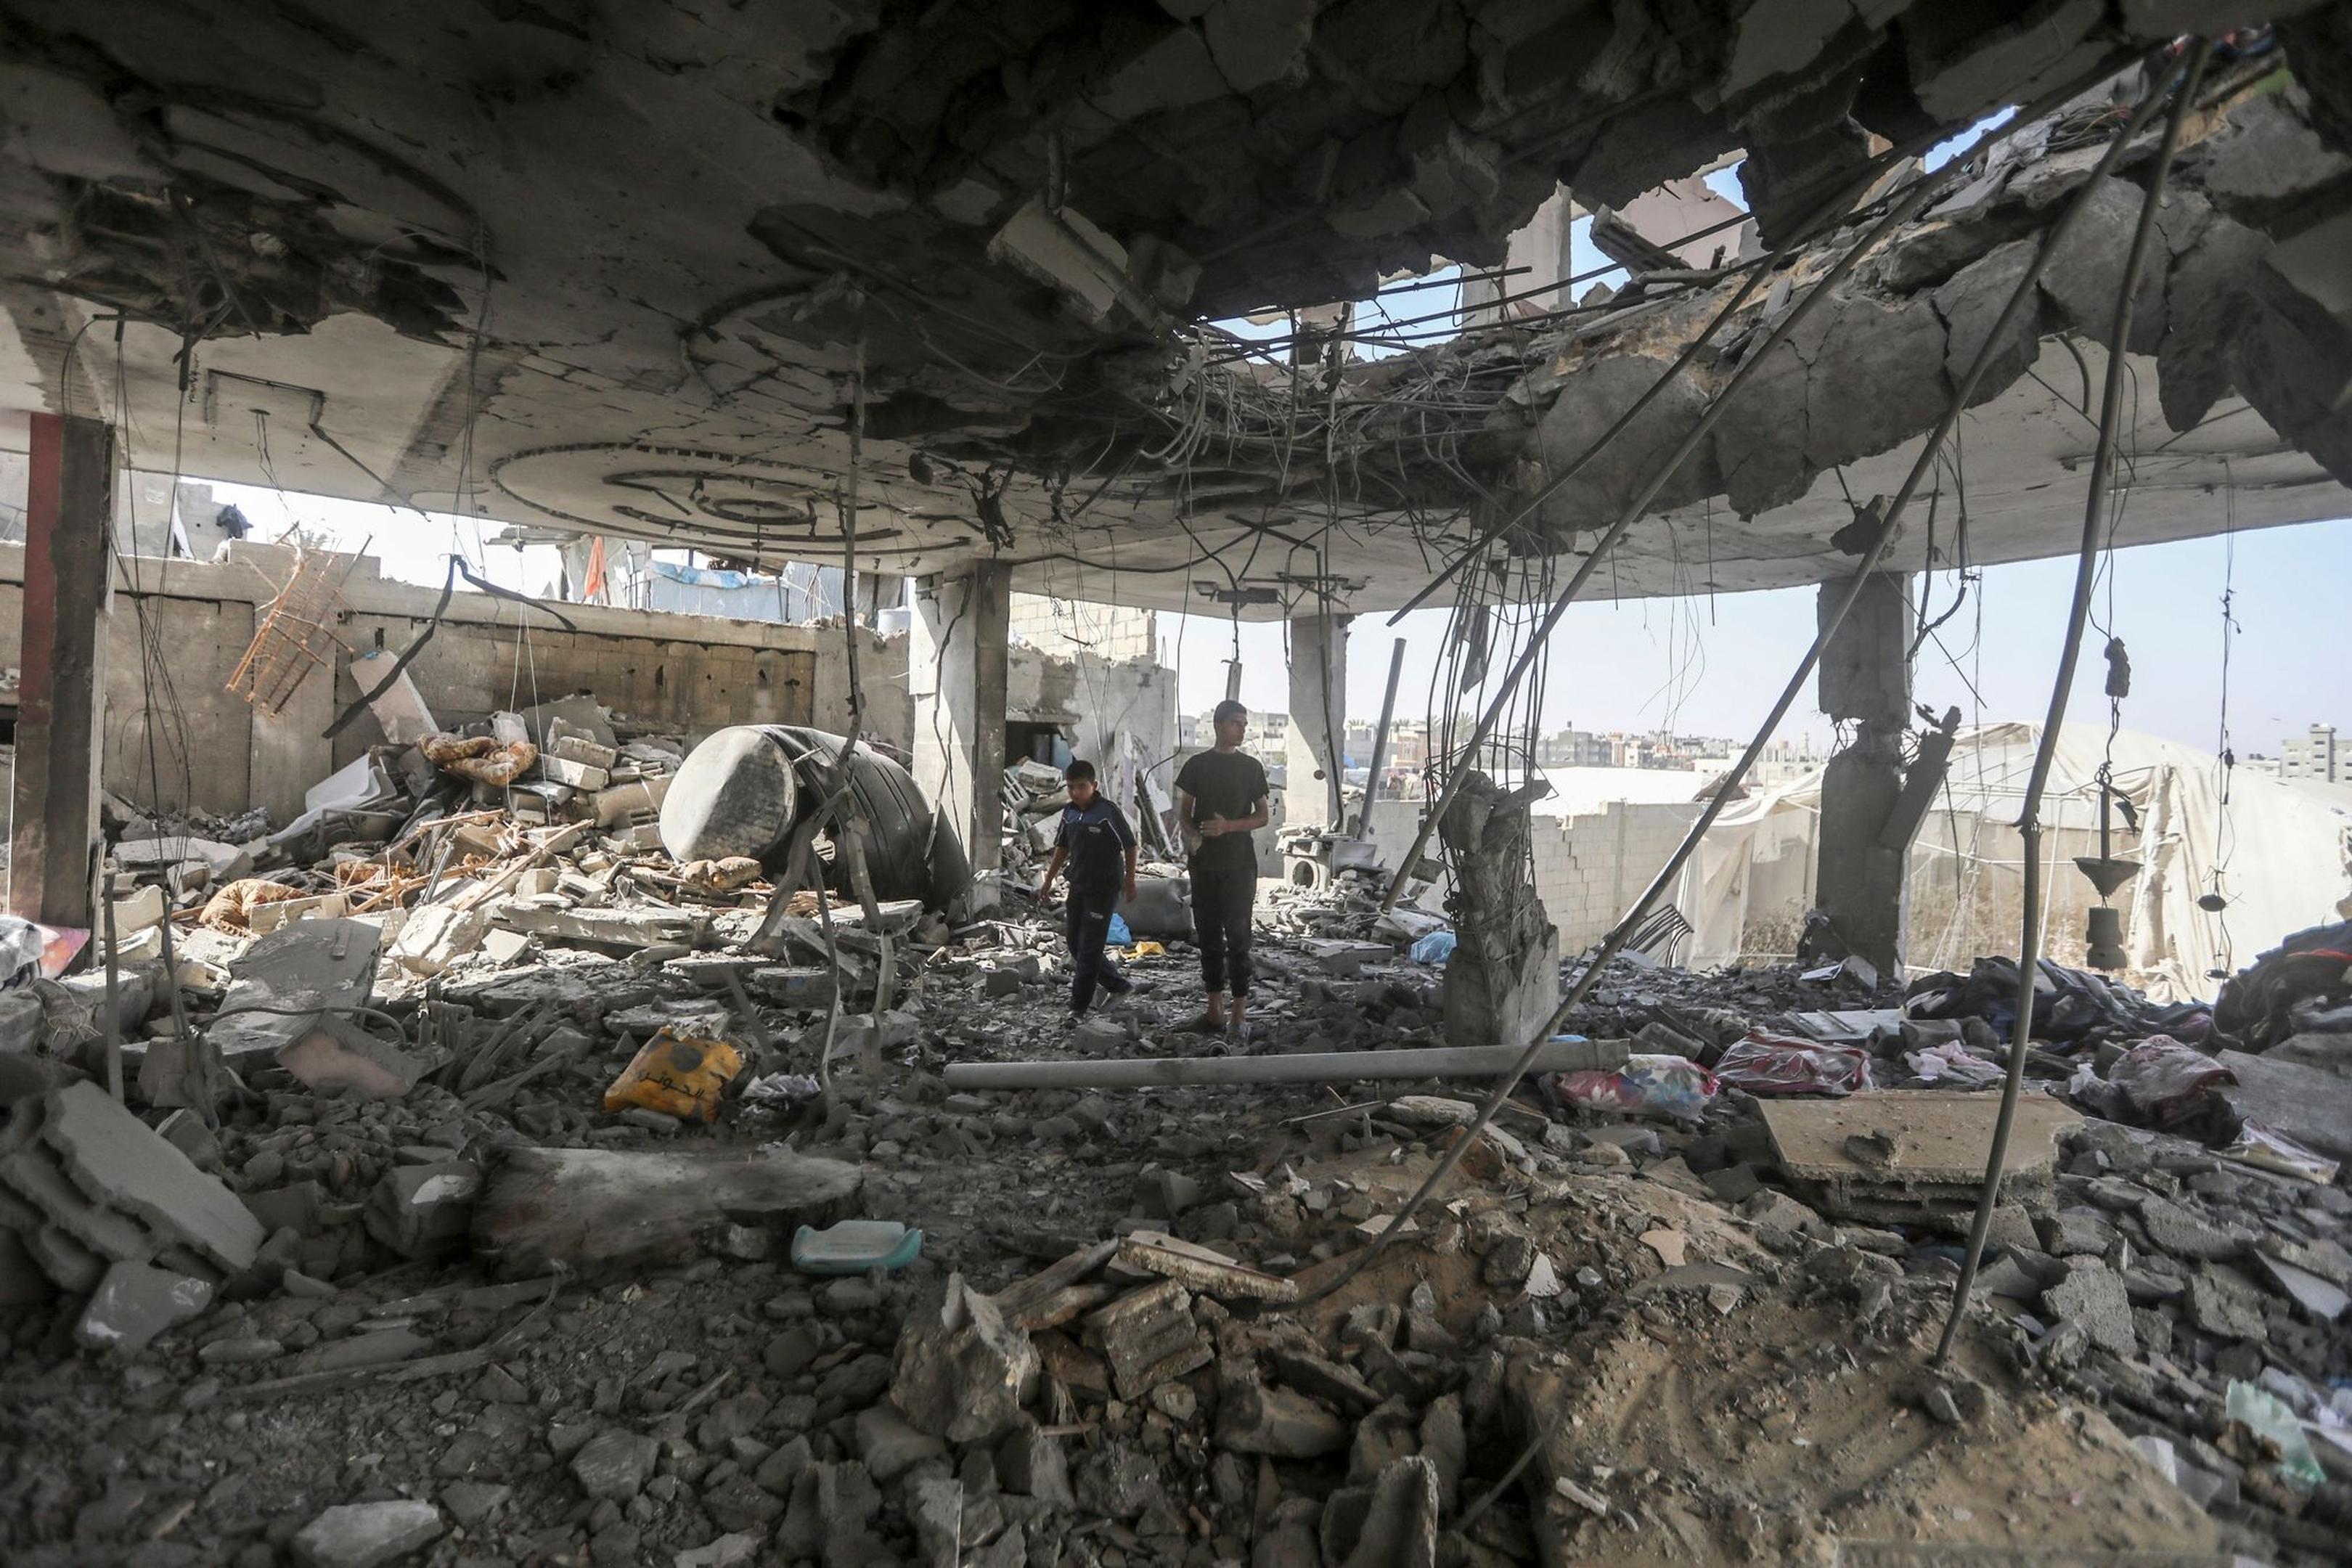 Palästinenser stehen in den Trümmern eines Hauses nach einem israelischen Luftangriff, bei dem mehrere Menschen getötet wurden.